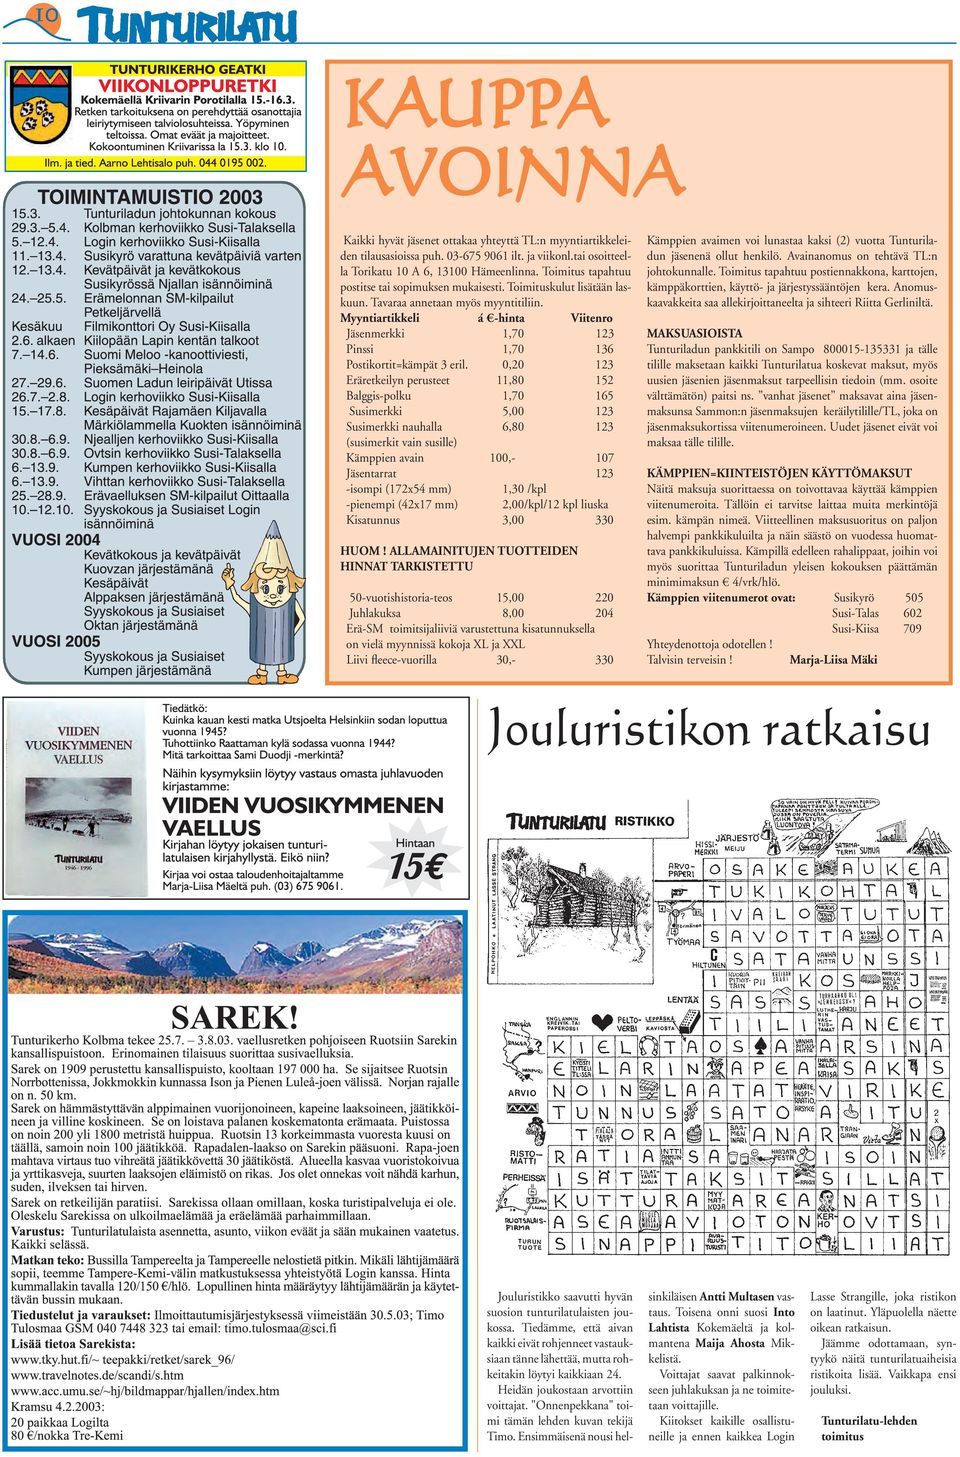 Myyntiartikkeli á -hinta Viitenro Jäsenmerkki 1,70 123 Pinssi 1,70 136 Postikortit=kämpät 3 eril.